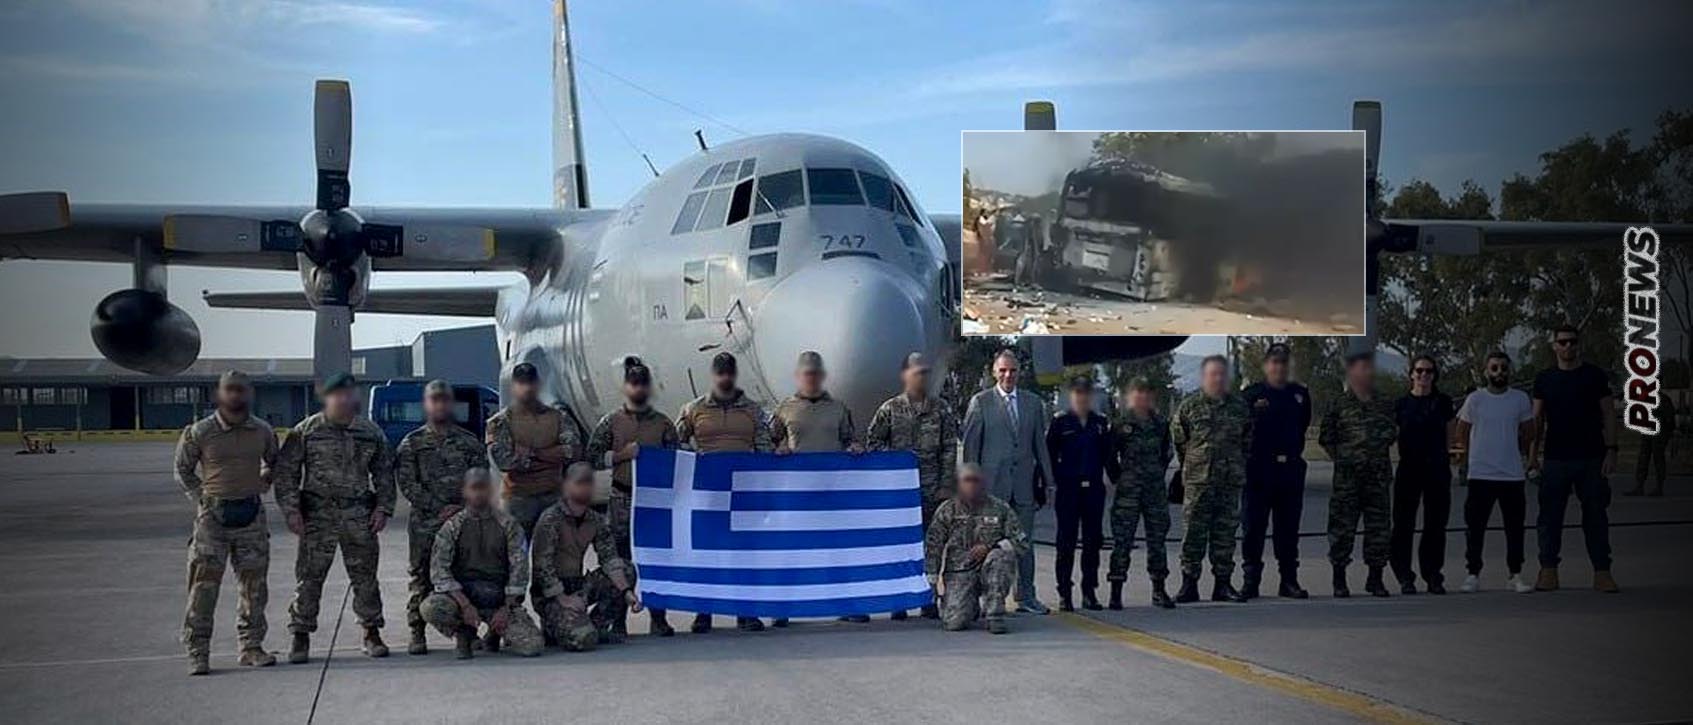 Αυτοί είναι οι τρεις Έλληνες στρατιωτικοί που σκοτώθηκαν στην επιχείρηση-φιάσκο στη Λιβύη